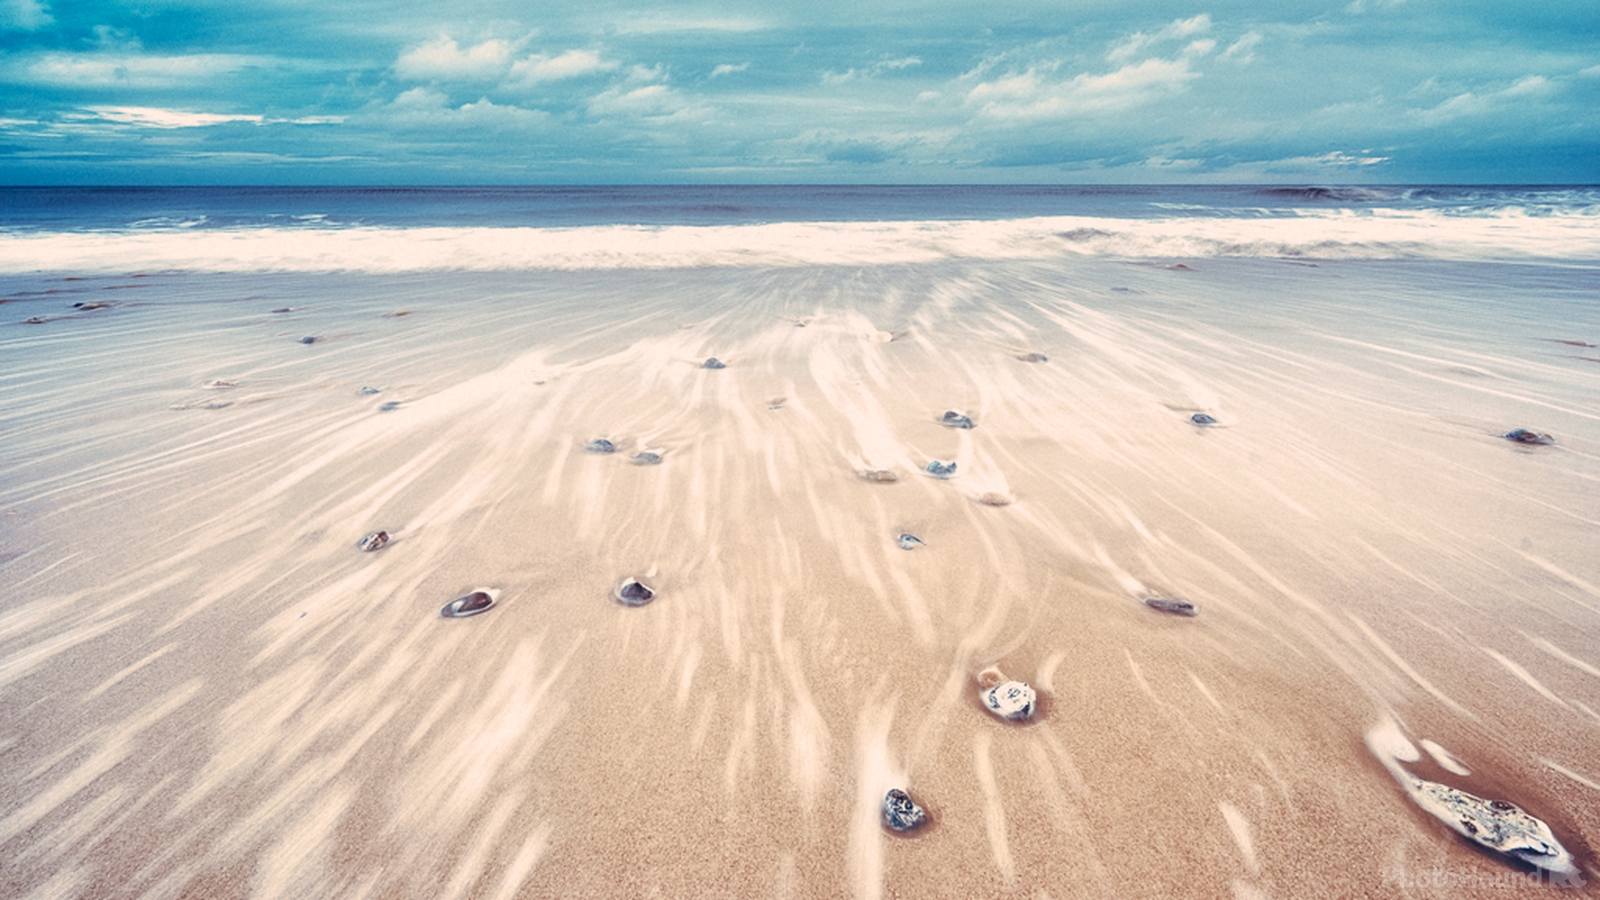 Image of Mundesley beach by James Billings.